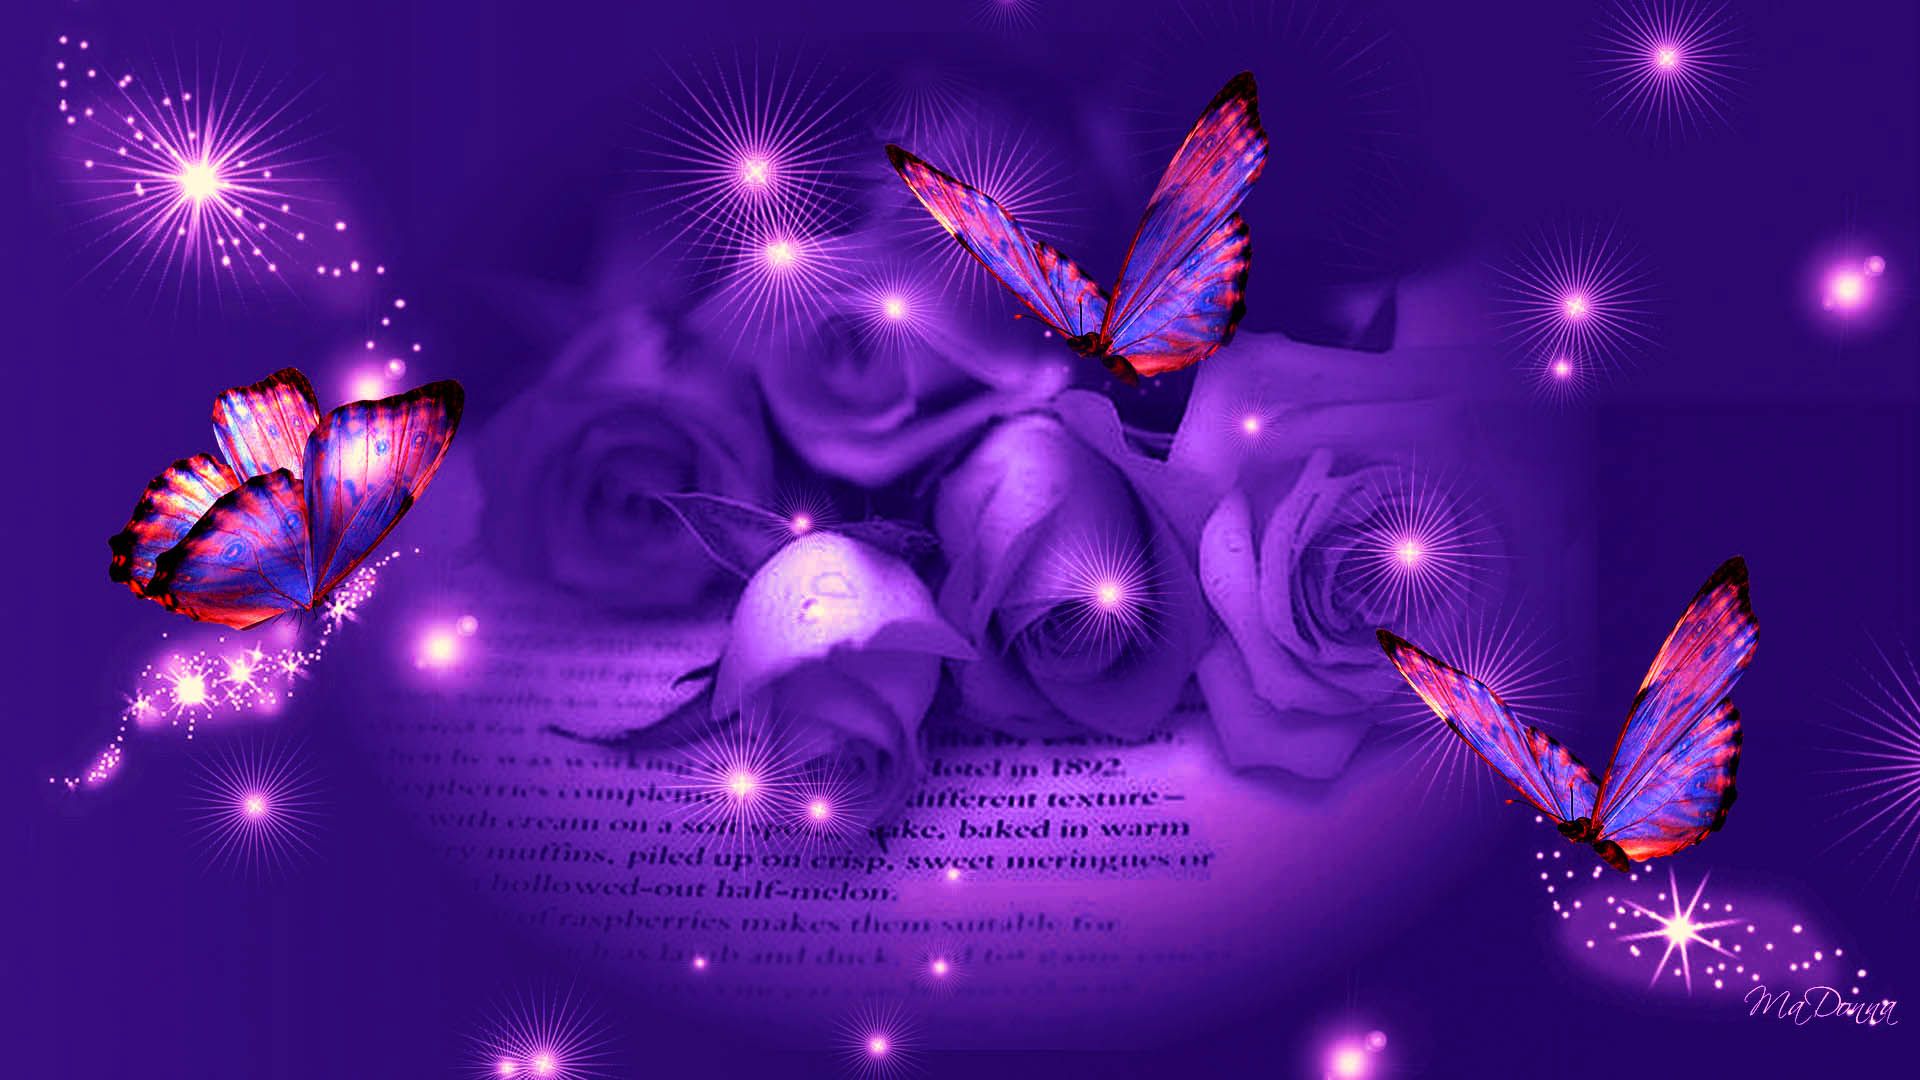 grafik wallpaper herunterladen,violett,lila,licht,beleuchtung,schmetterling